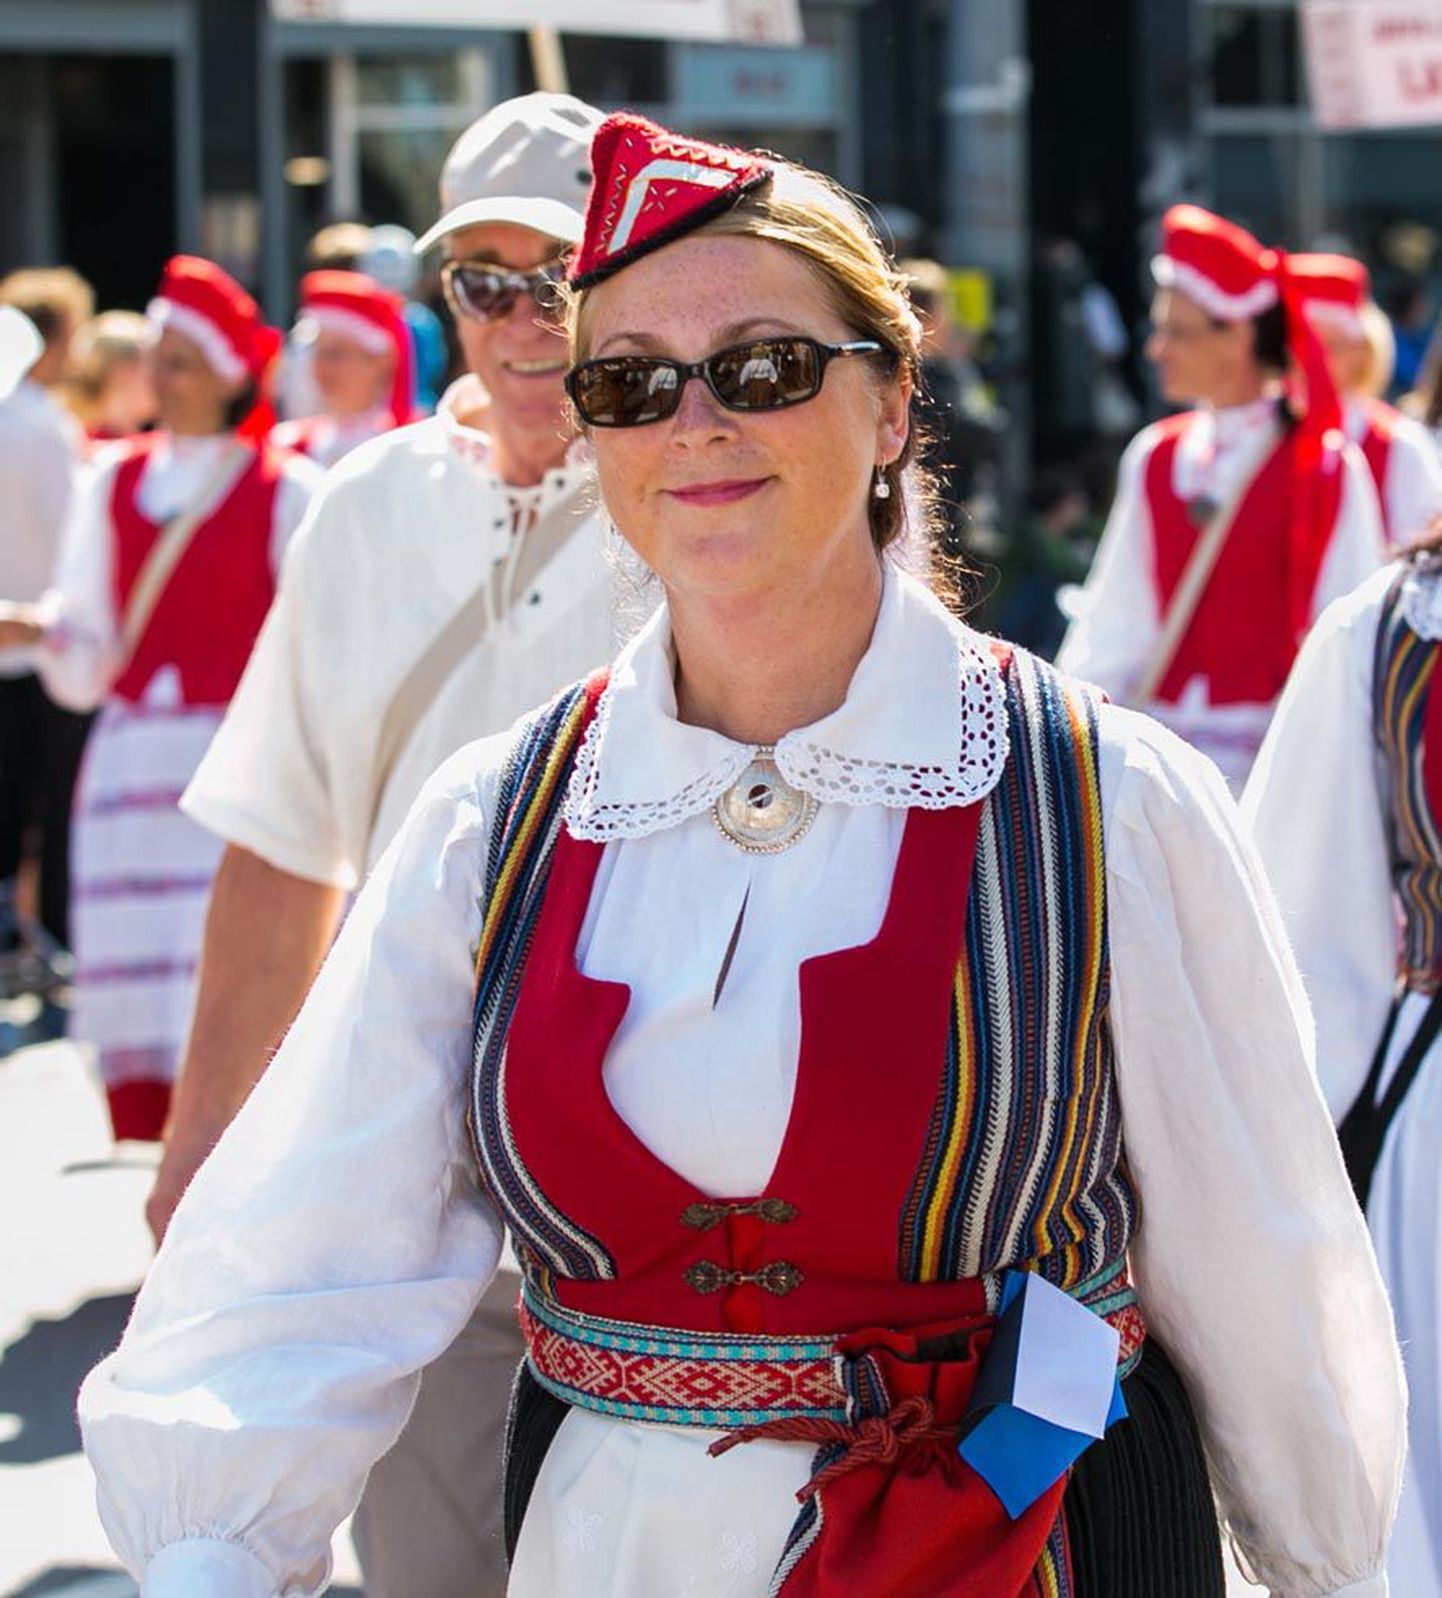 Möödunud suvel marssis Maret Põder Tallinnas laulu- ja tantsupeo rongkäigus koos Roosna-Alliku valla rahvaga, kellel polnud õrna aimugi, et abivallavanem on puudega lapse tagant raha varastanud.